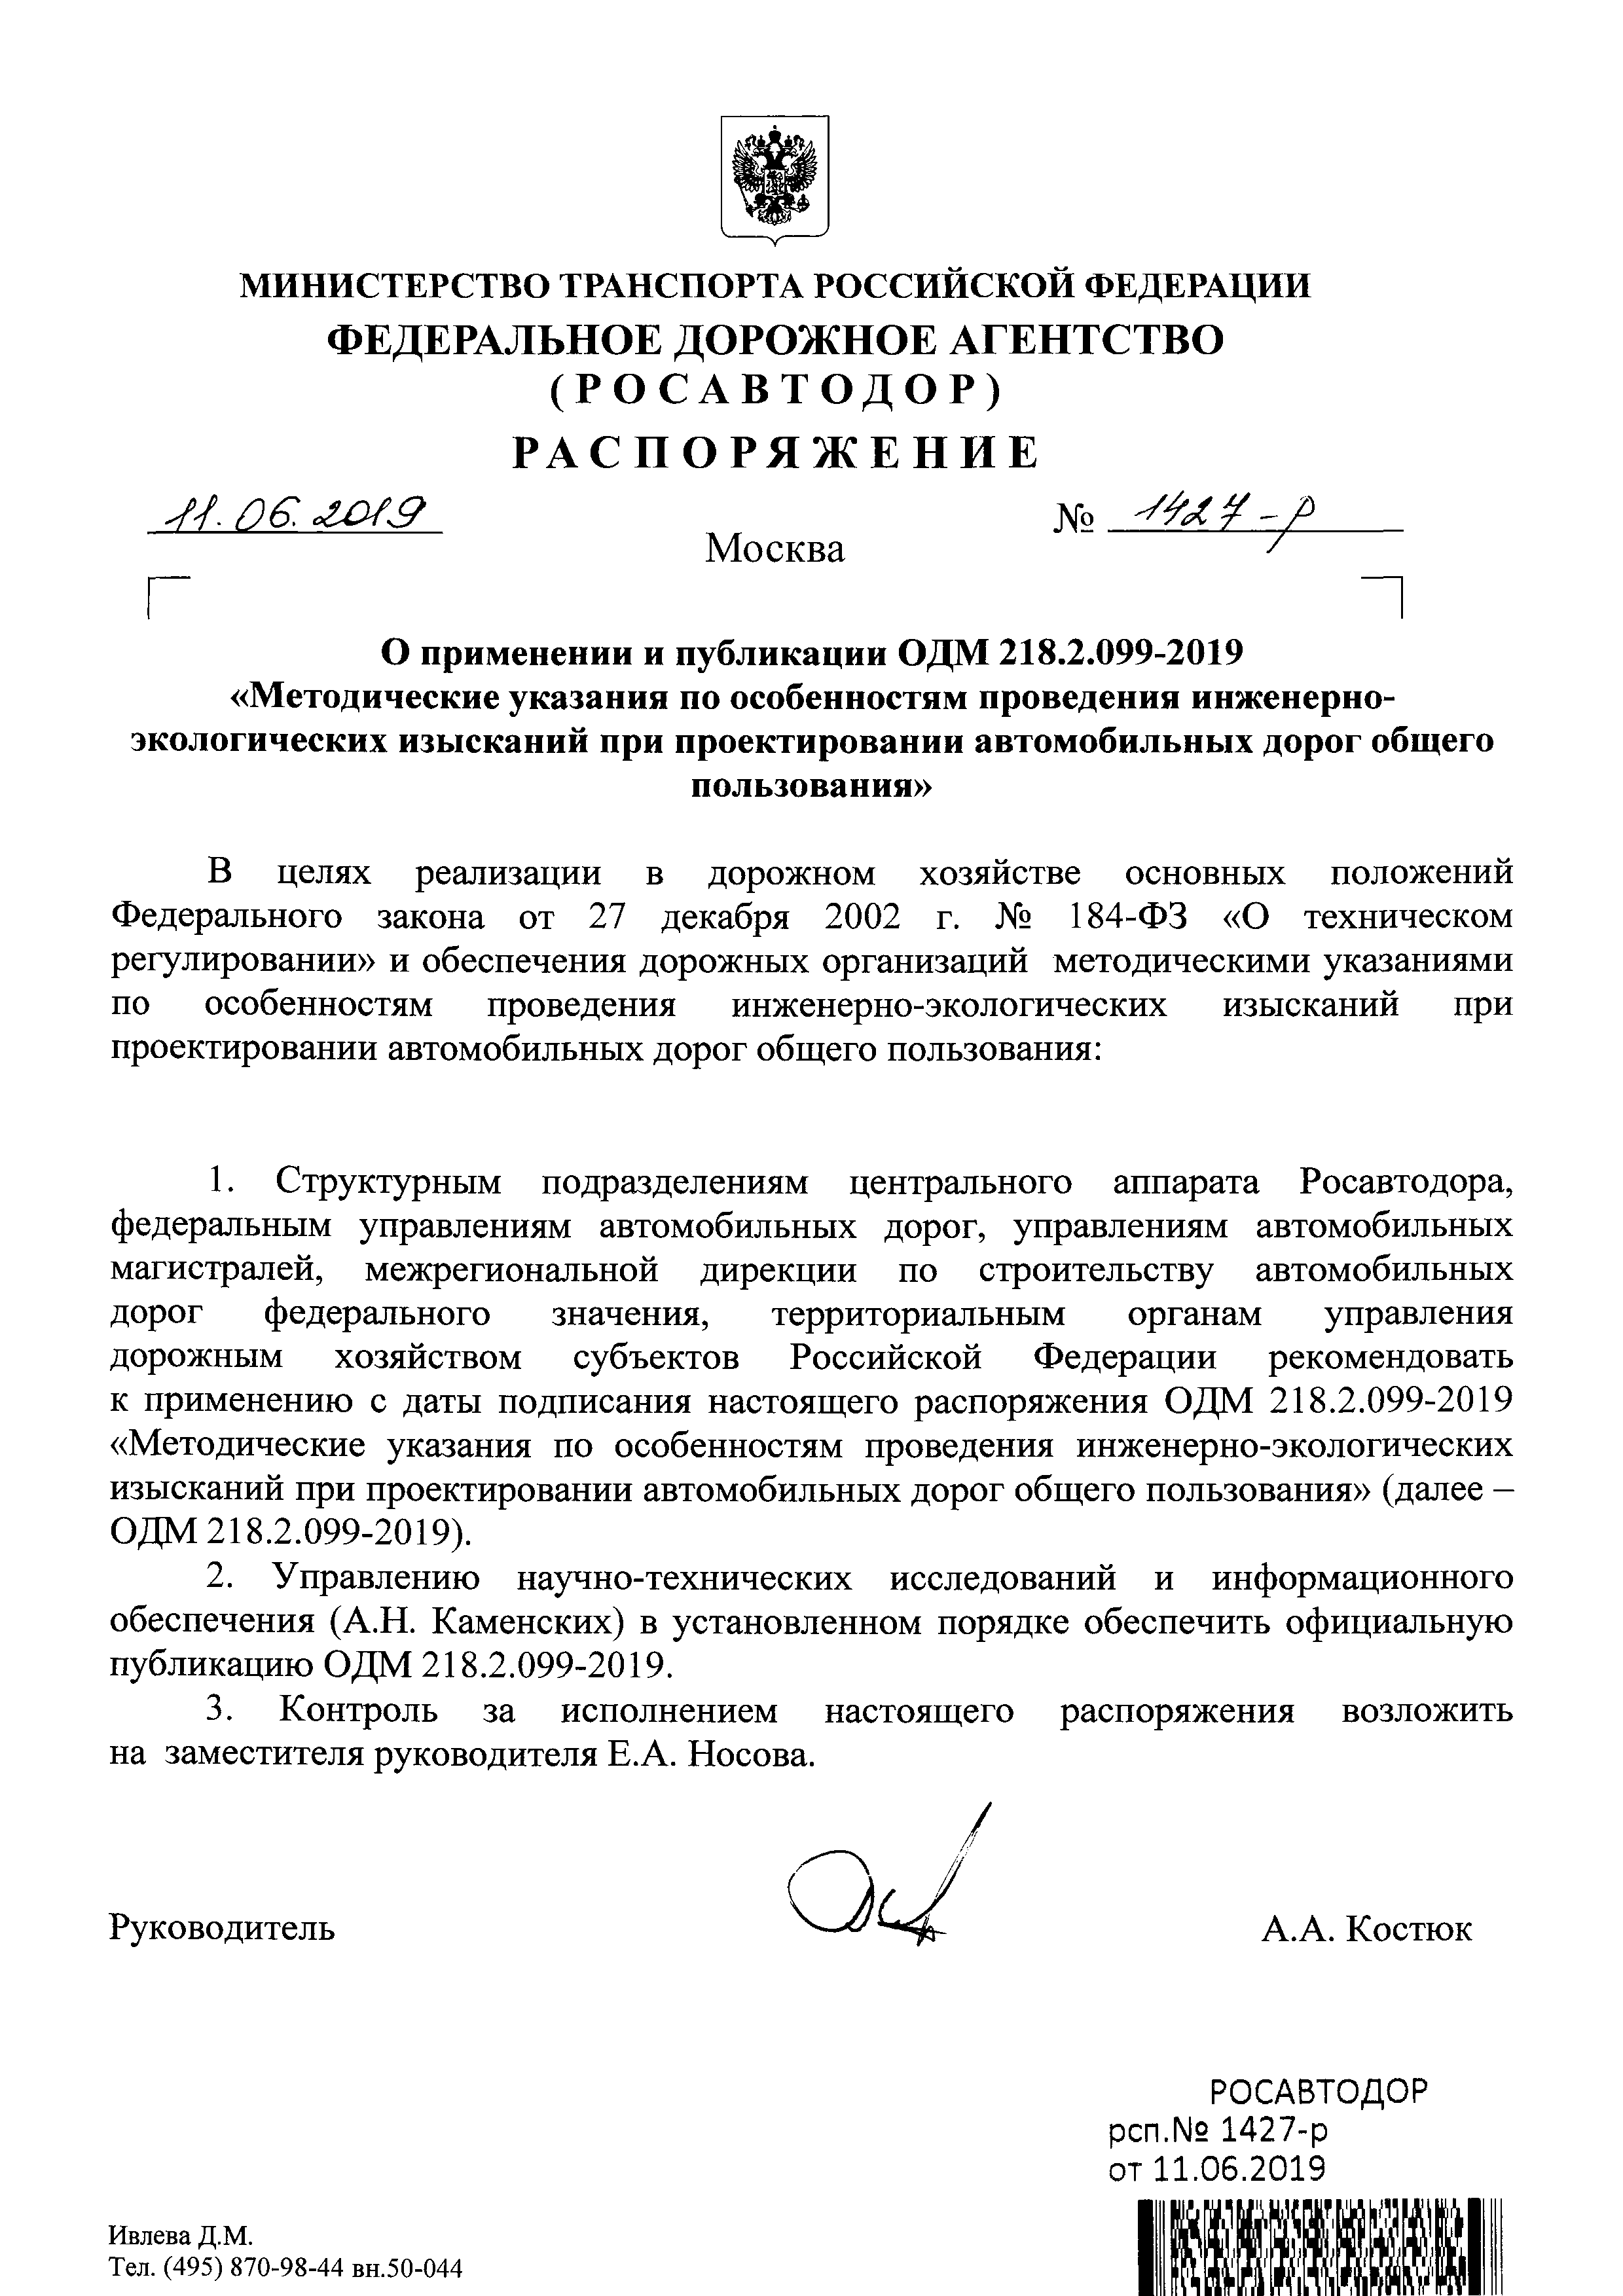 ОДМ 218.2.099-2019